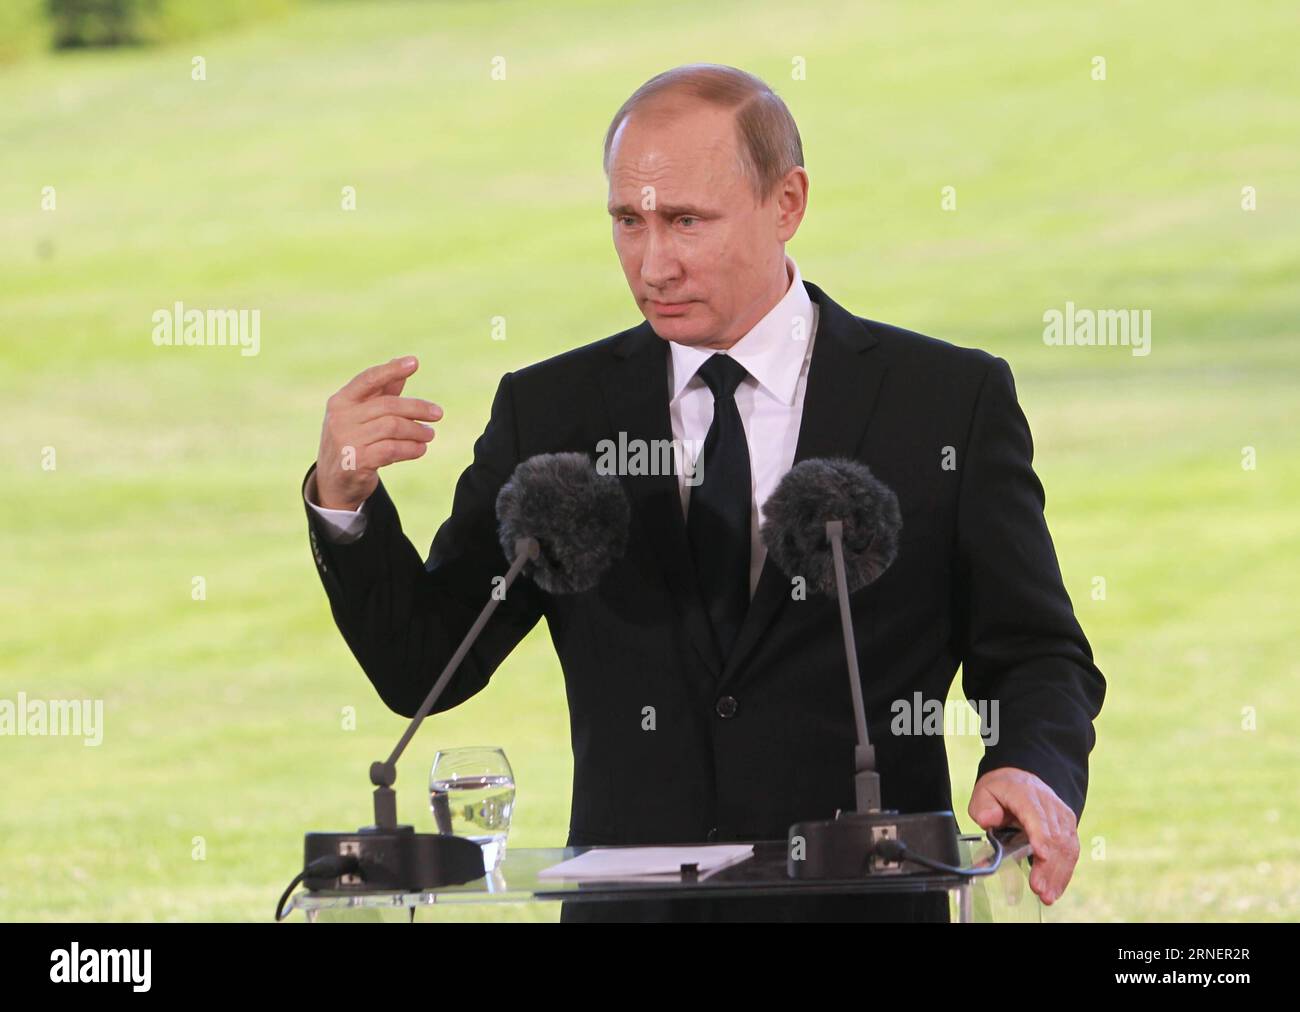 NAANTALI, 1. Juli 2016 -- der russische Präsident Wladimir Putin spricht auf einer gemeinsamen Pressekonferenz nach Gesprächen mit seinem finnischen Amtskollegen Sauli Niinisto in Naantali, Finnland, am 1. Juli 2016. Putin sagte hier am Freitag, dass Russland die Entscheidung Finnlands respektieren würde, ob er der NATO beitreten wolle, aber er malte ein schreckliches Bild für Finnland, wenn es NATO-Mitglied wäre. ) FINNLAND-NAANTALI-RUSSLAND-PUTIN-BESUCH LixJizhi PUBLICATIONxNOTxINxCHN Naantali 1. Juli 2016 Besuch des russischen Präsidenten Wladimir Putin AUF einer gemeinsamen Pressekonferenz nach Gesprächen mit seinem finnischen Teil Sauli Niinisto in N Stockfoto